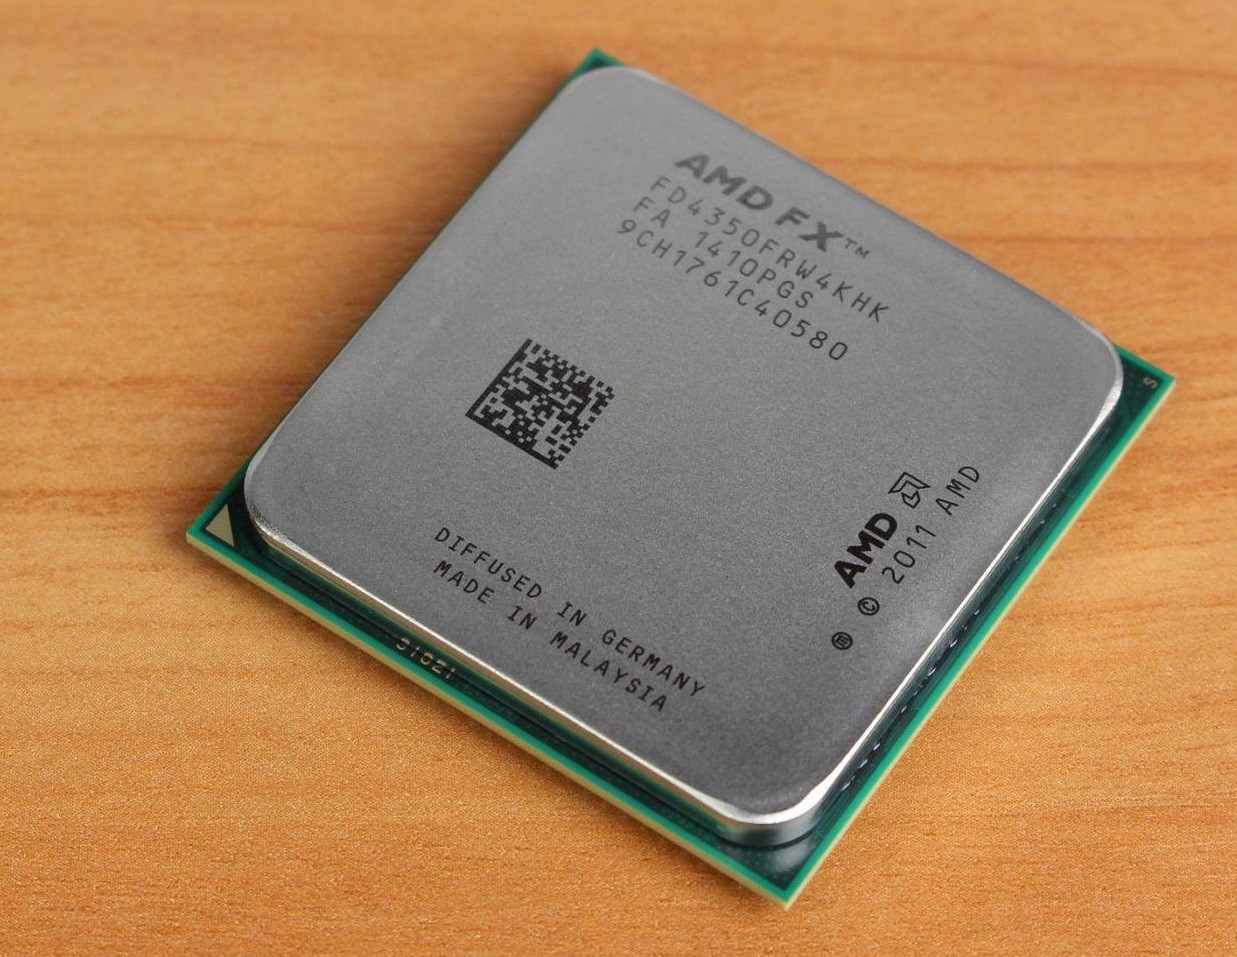 Процесор AMD FX 4350 4.2 GHz AM3+ tray